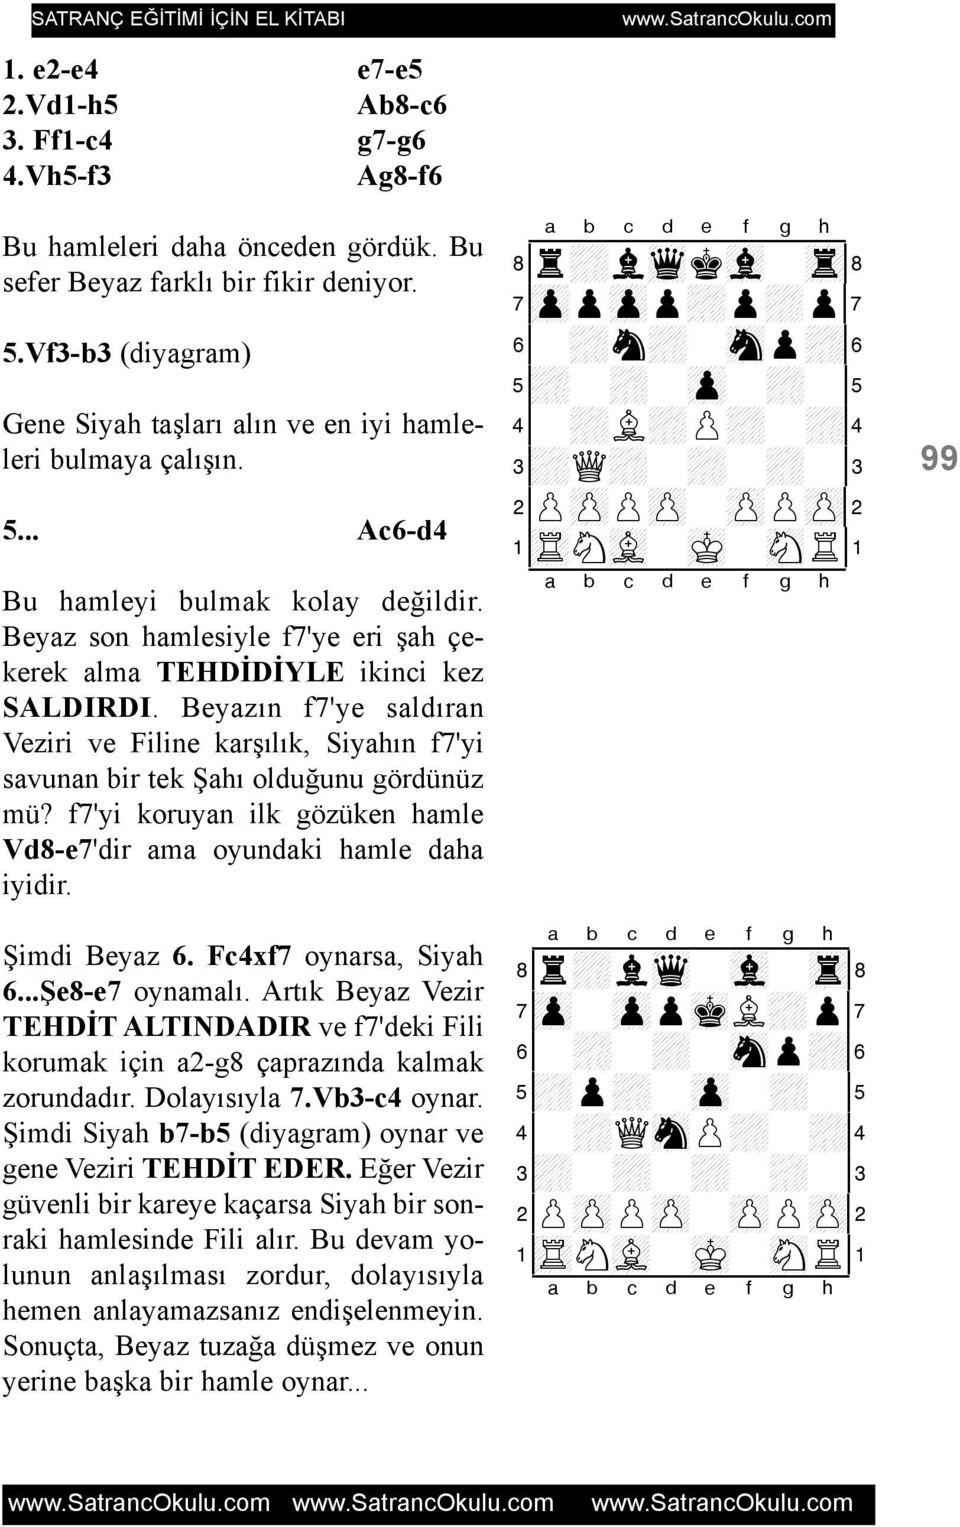 Beyazýn f7'ye saldýran Veziri ve Filine karþýlýk, Siyahýn f7'yi savunan bir tek Þahý olduðunu gördünüz mü? f7'yi koruyan ilk gözüken hamle Vd8-e7'dir ama oyundaki hamle daha iyidir. Þimdi Beyaz 6.